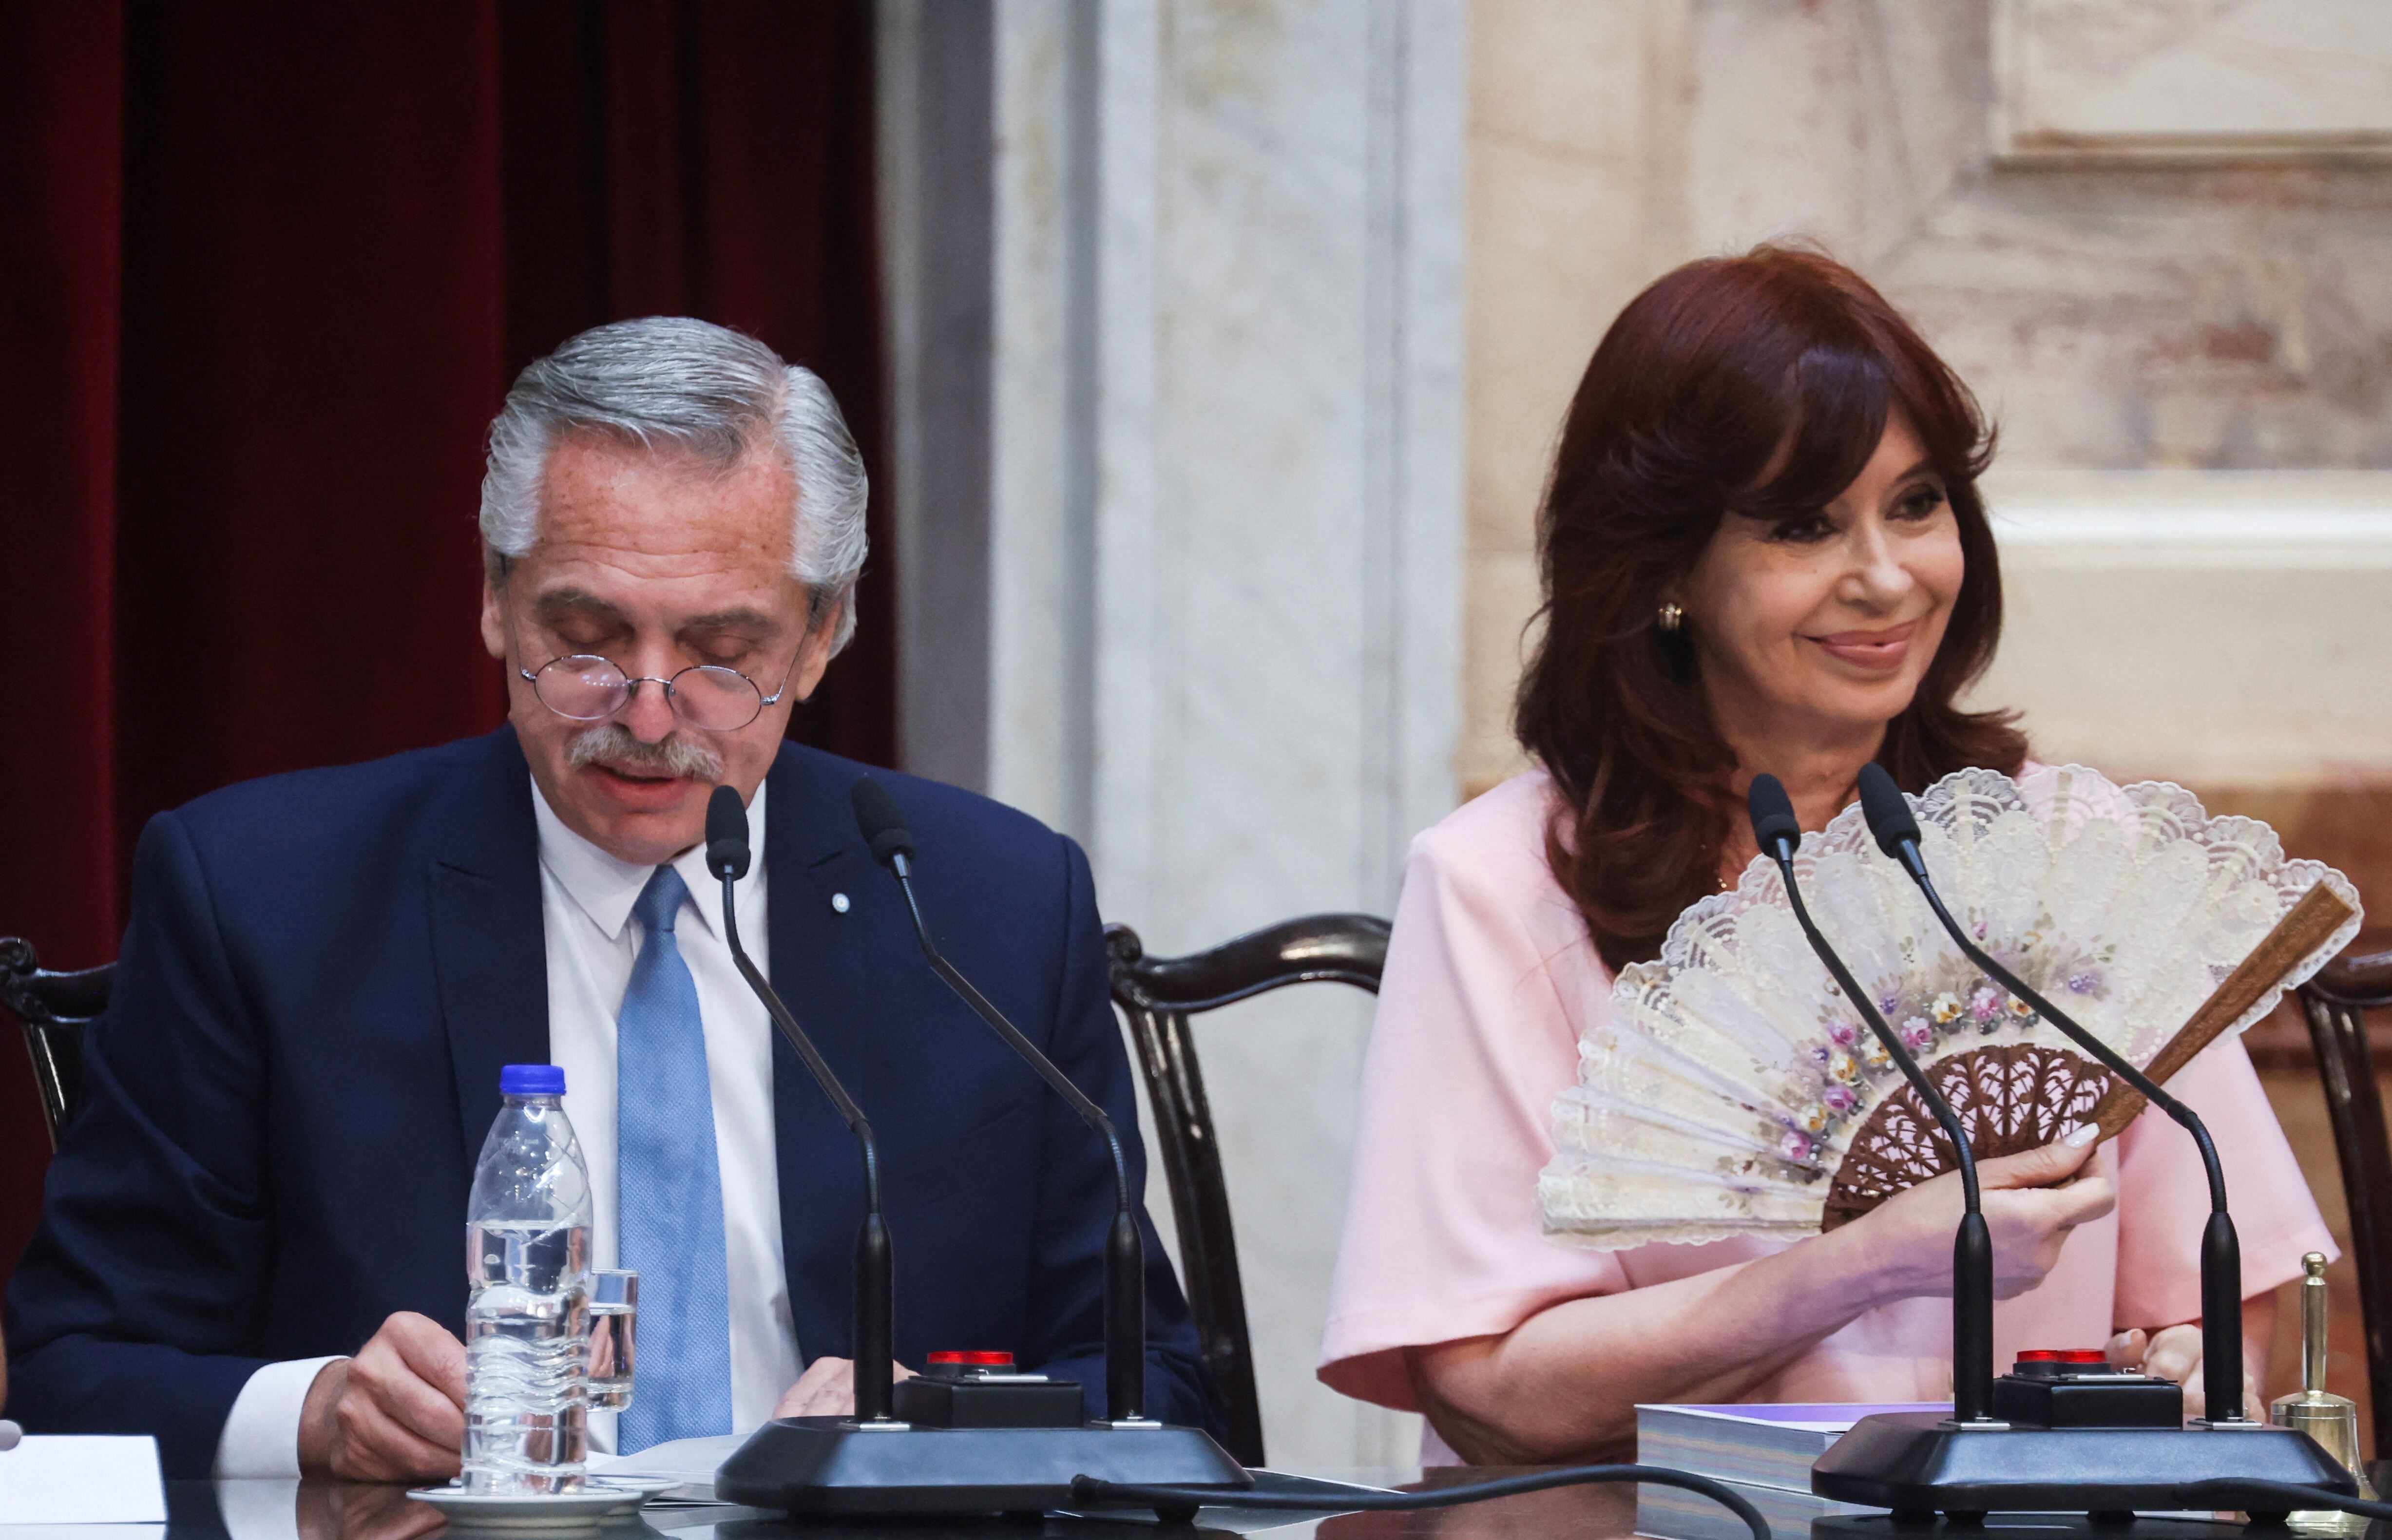 El Presidente junto a Cristina Kirchner en la apertura de sesiones; la última que encabezó y encabezará Fernández luego de su decisión de no ir por la reelección (REUTERS)